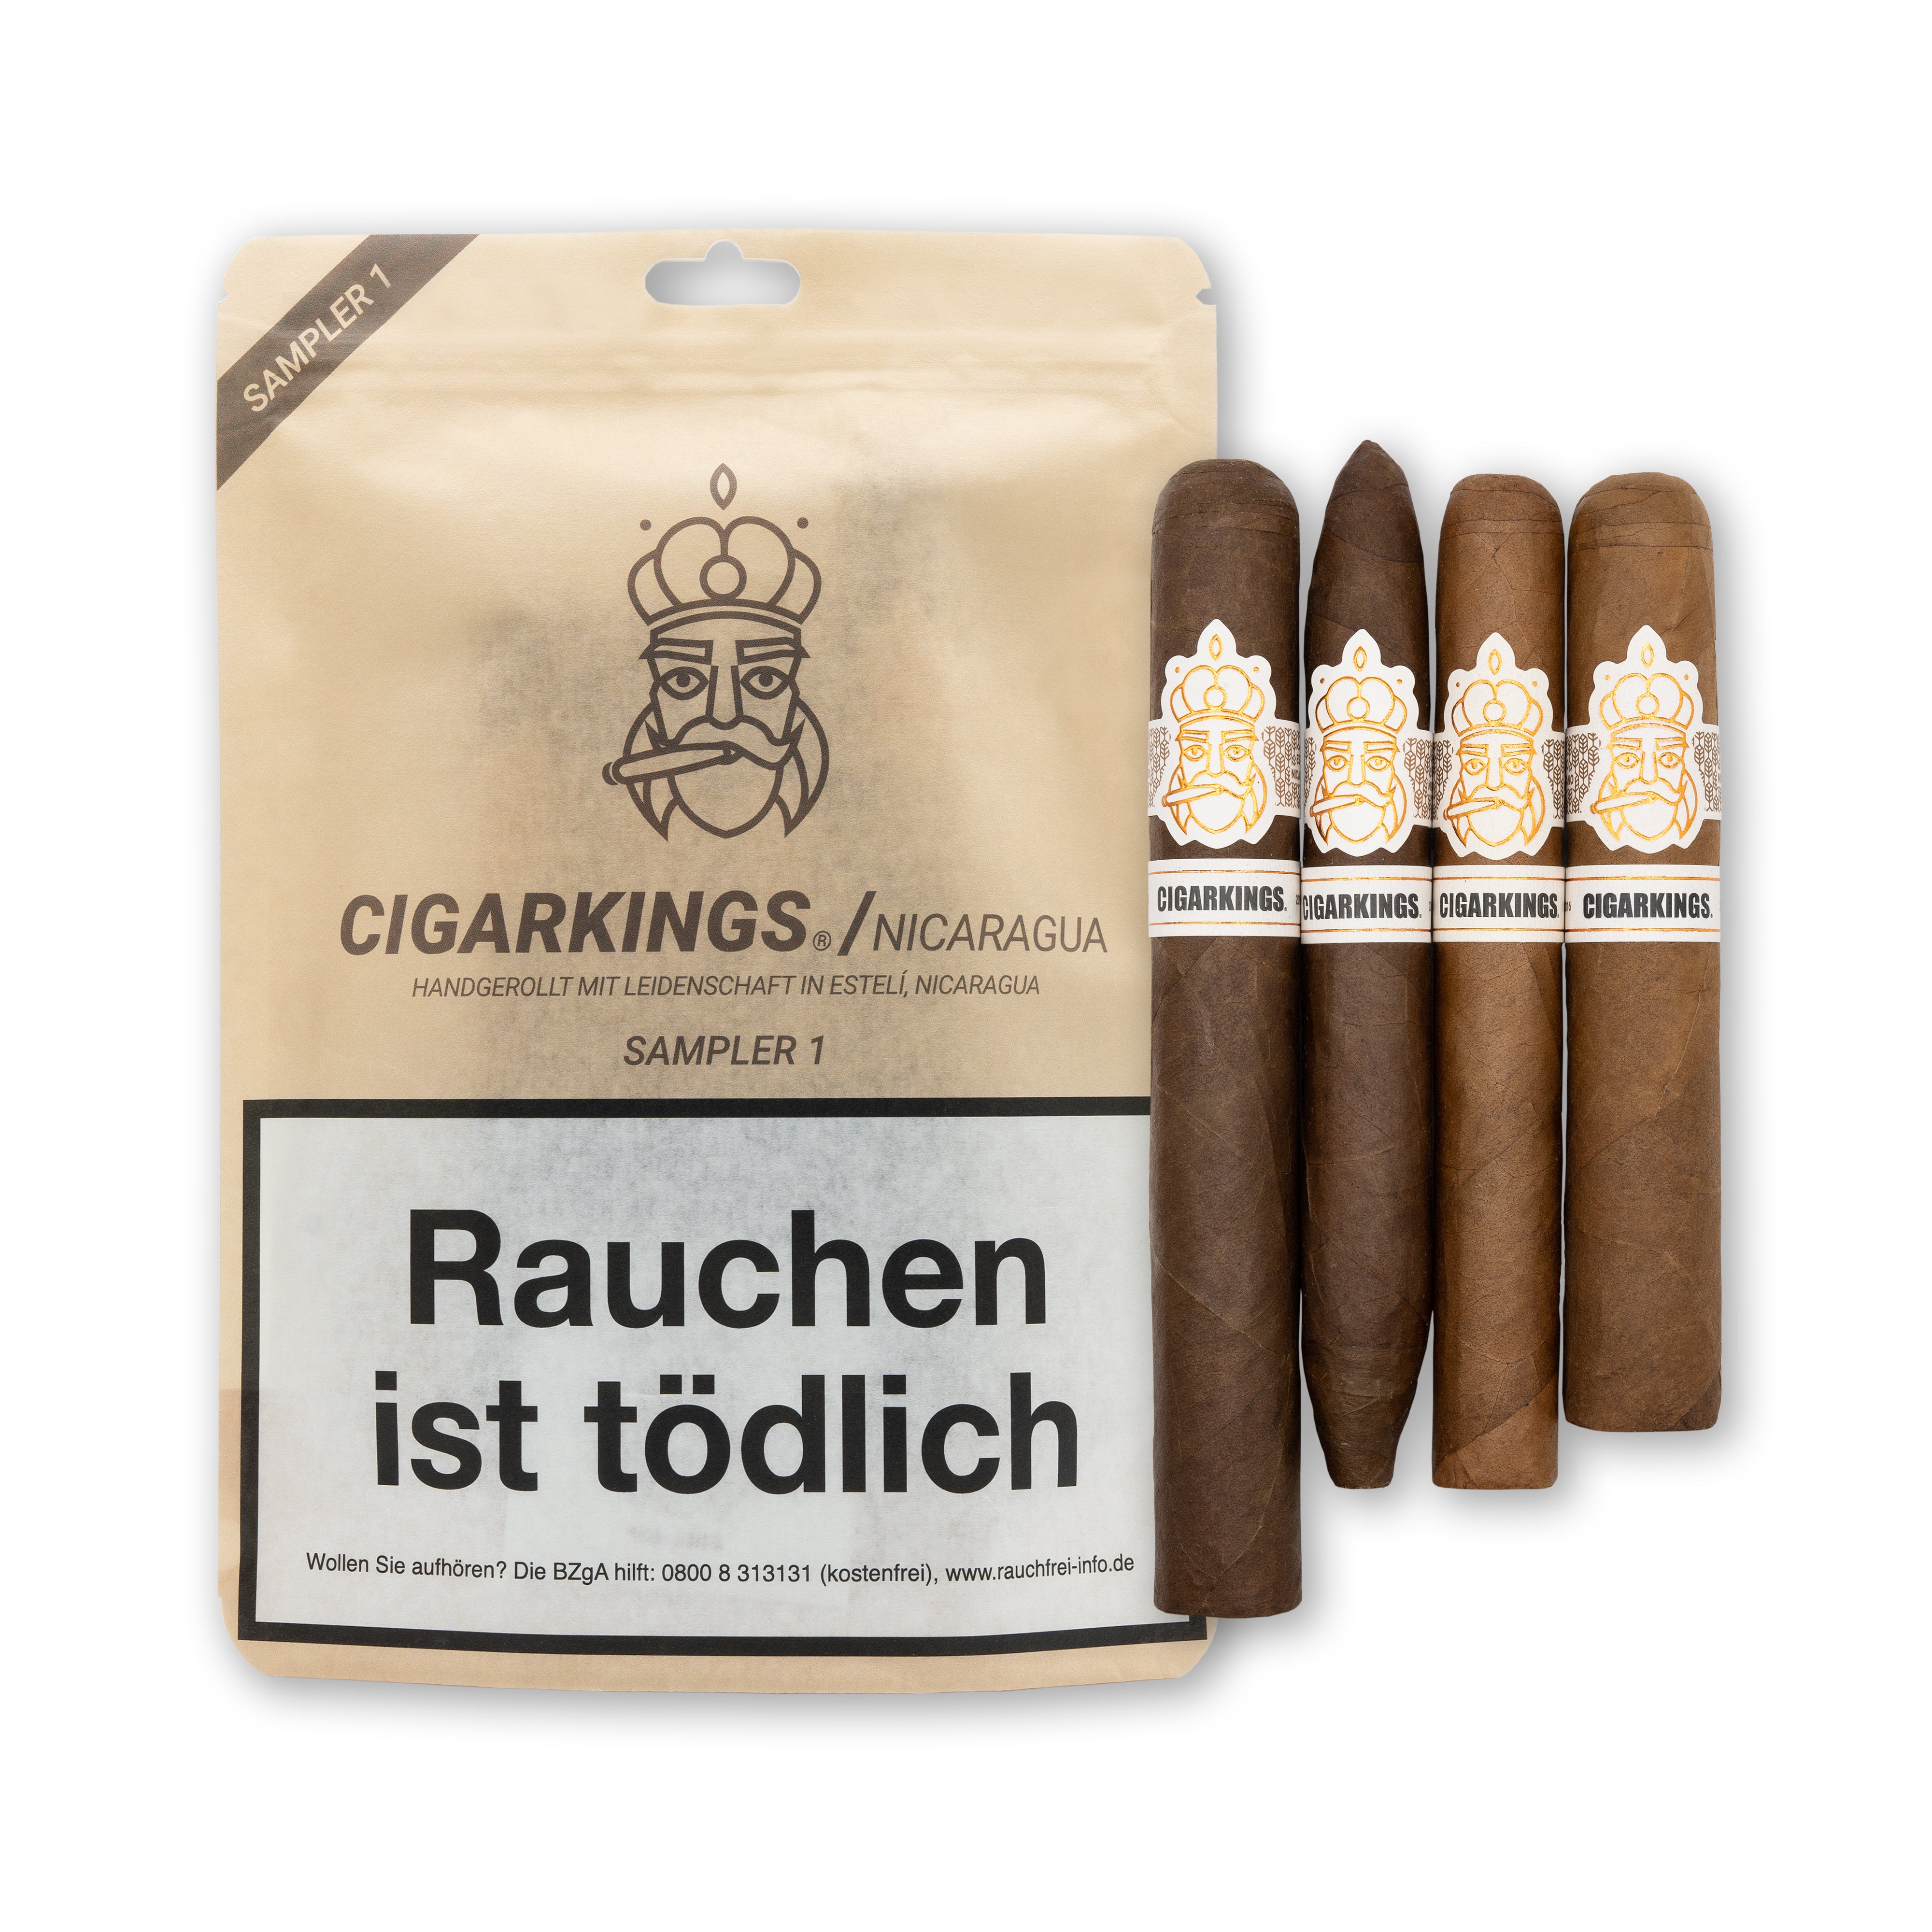 CigarKings Nicaragua Zigarren Sampler 1 Corona Robusto Elegantes Toro